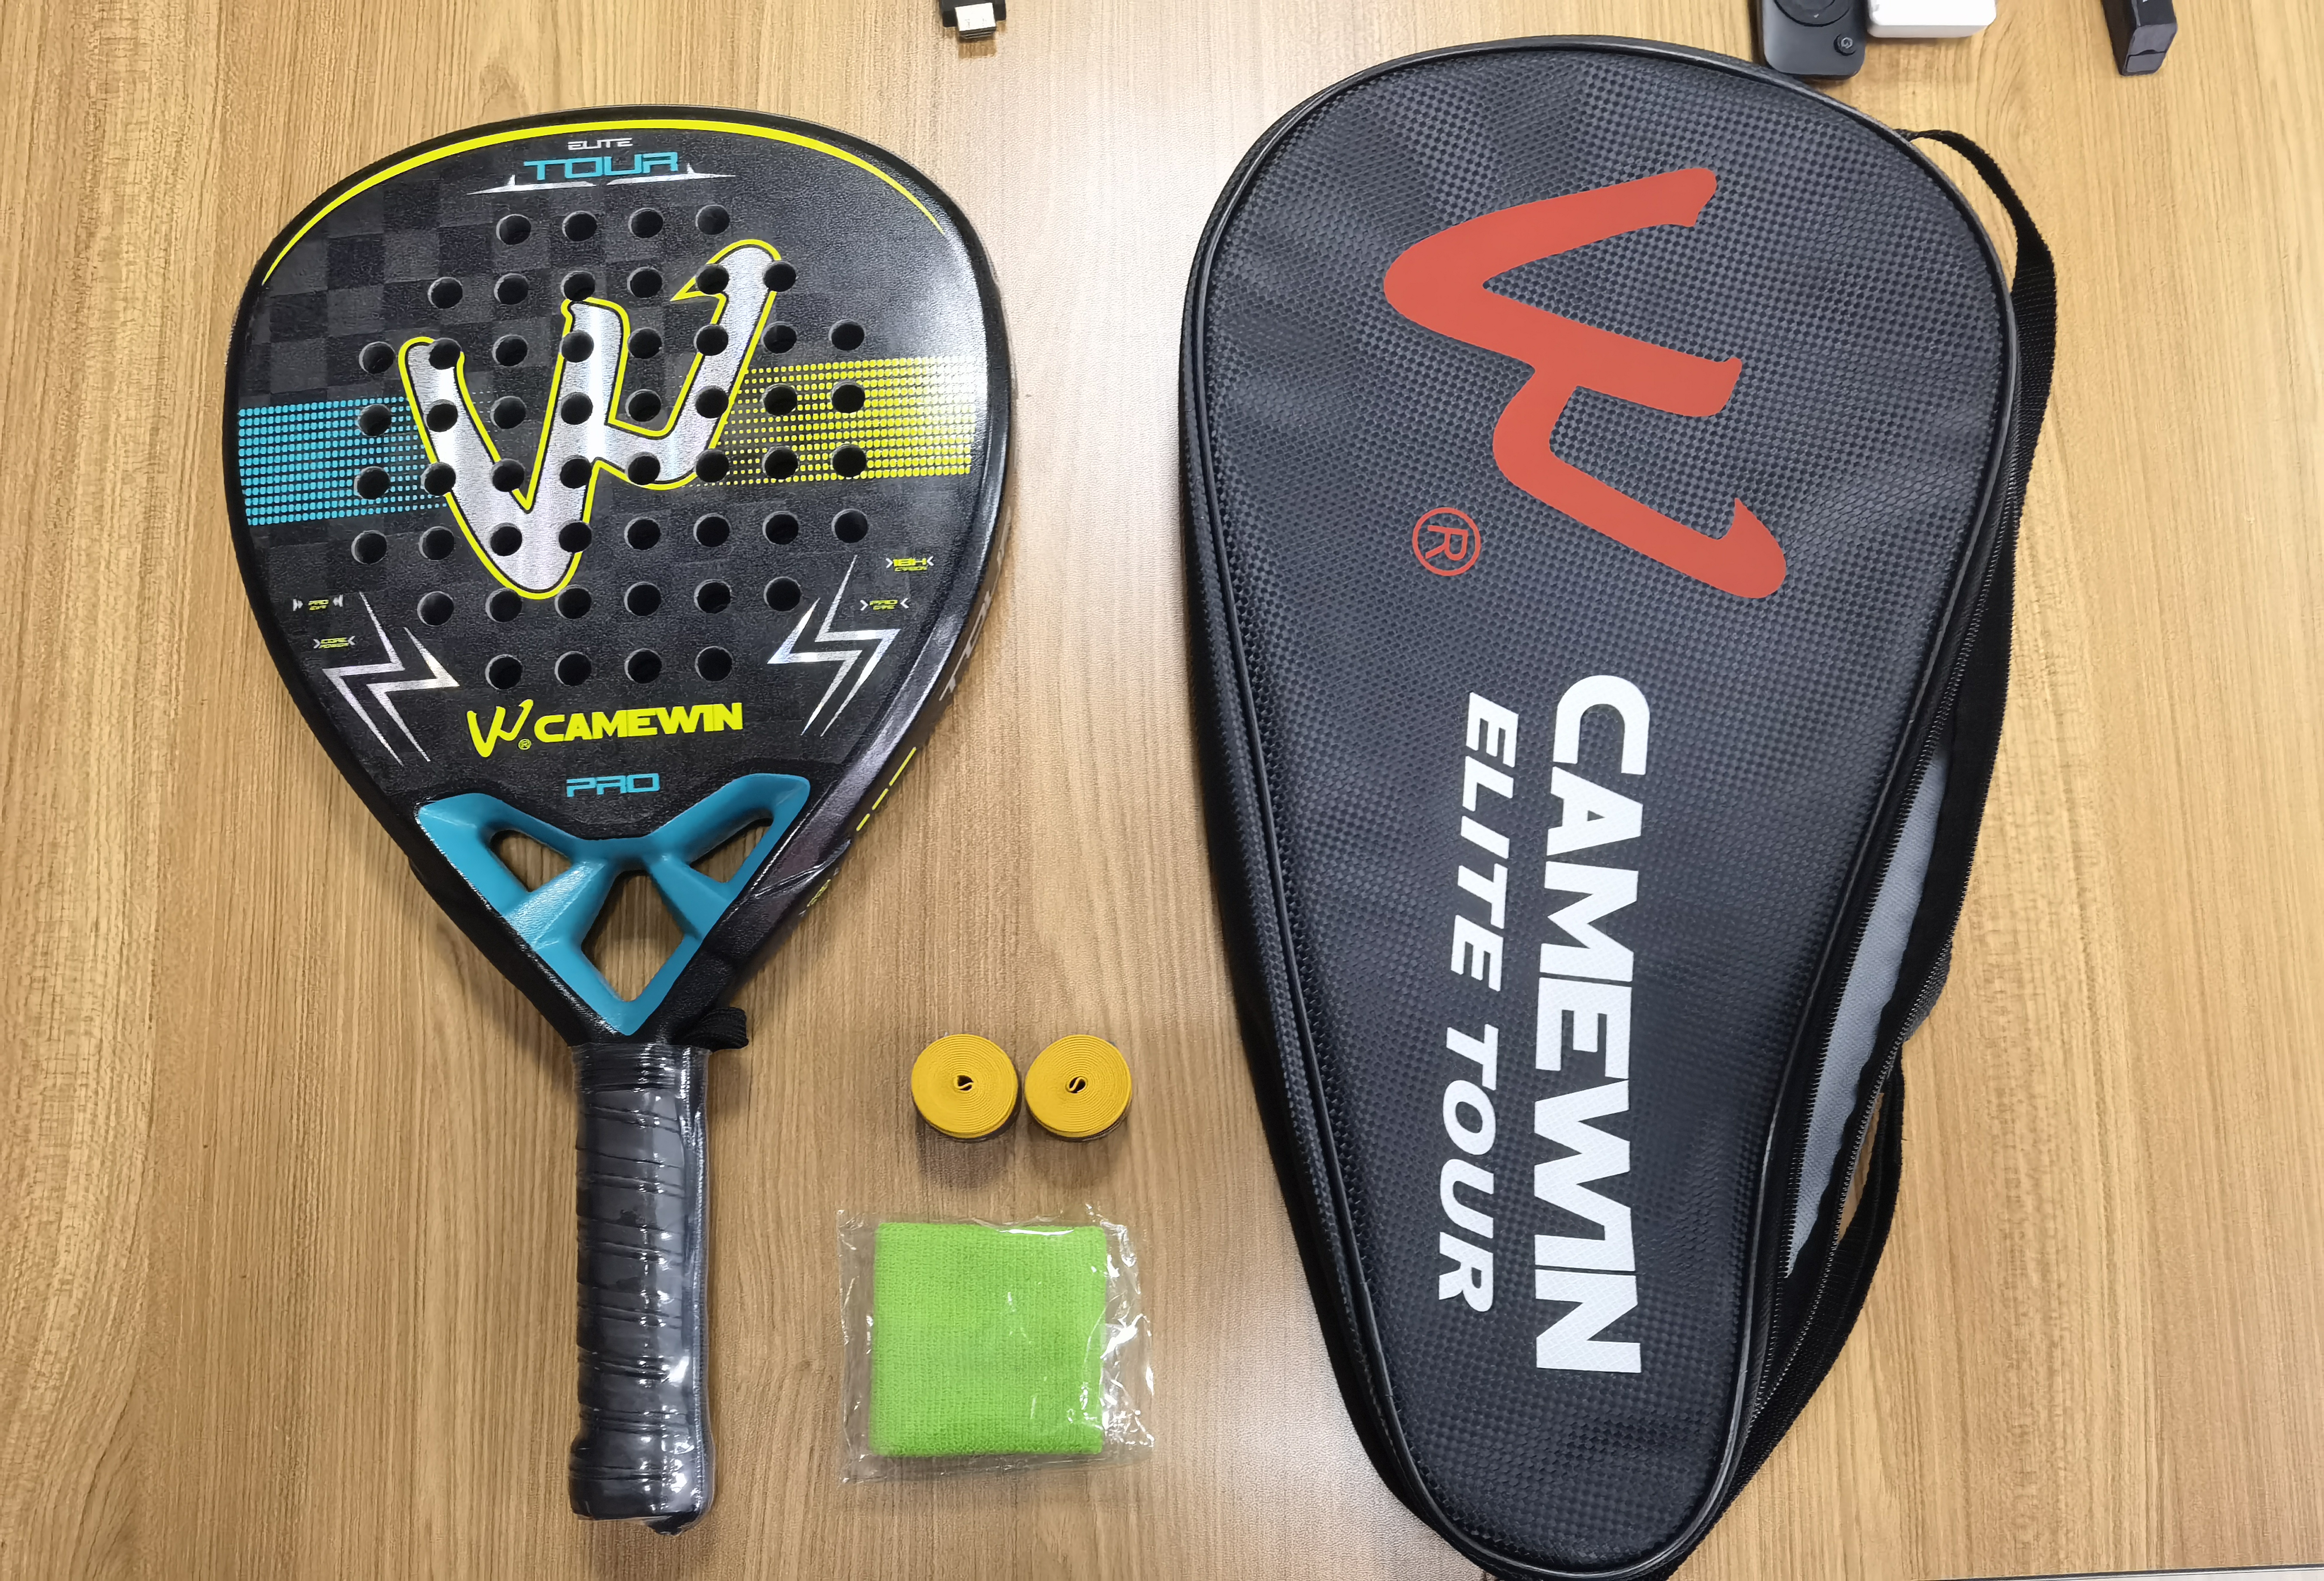 EVA 메모리 플렉스 폼 코어가 포함된 패들 라켓 탄소 섬유 표면 패들 테니스 라켓 패들 테니스 라켓